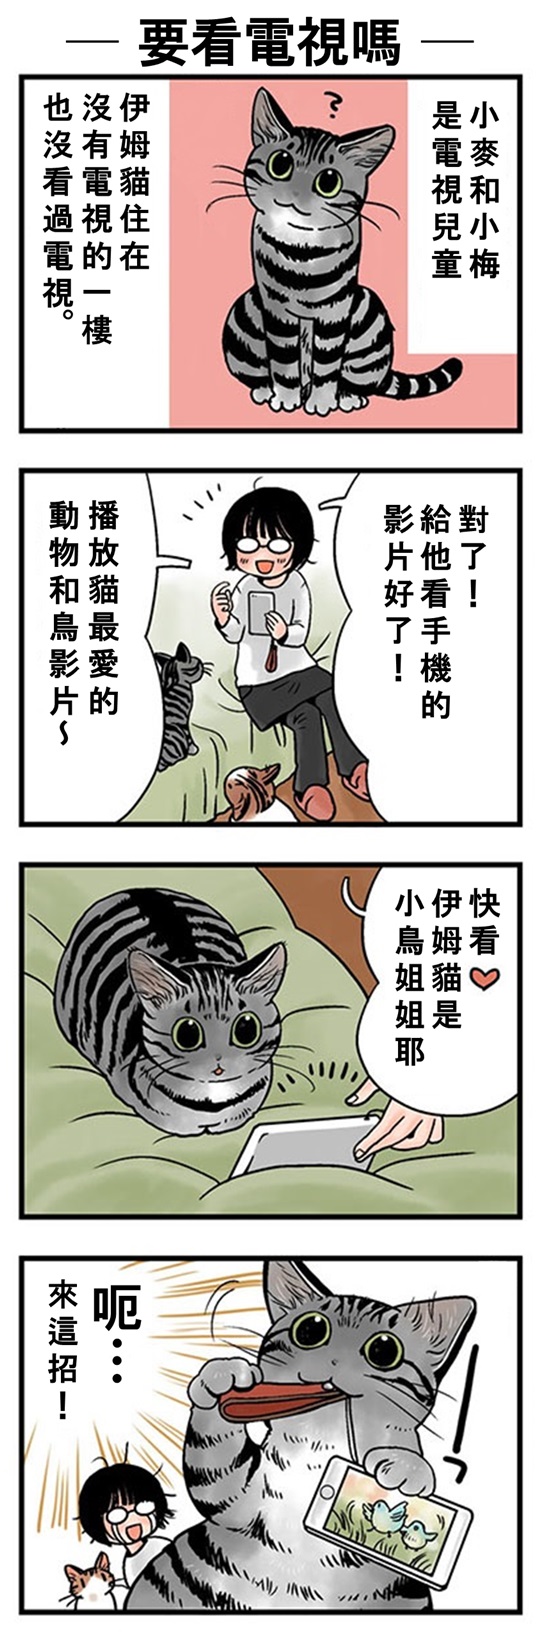 ★山野りんりん猫まみれ漫画★65話-2.jpg